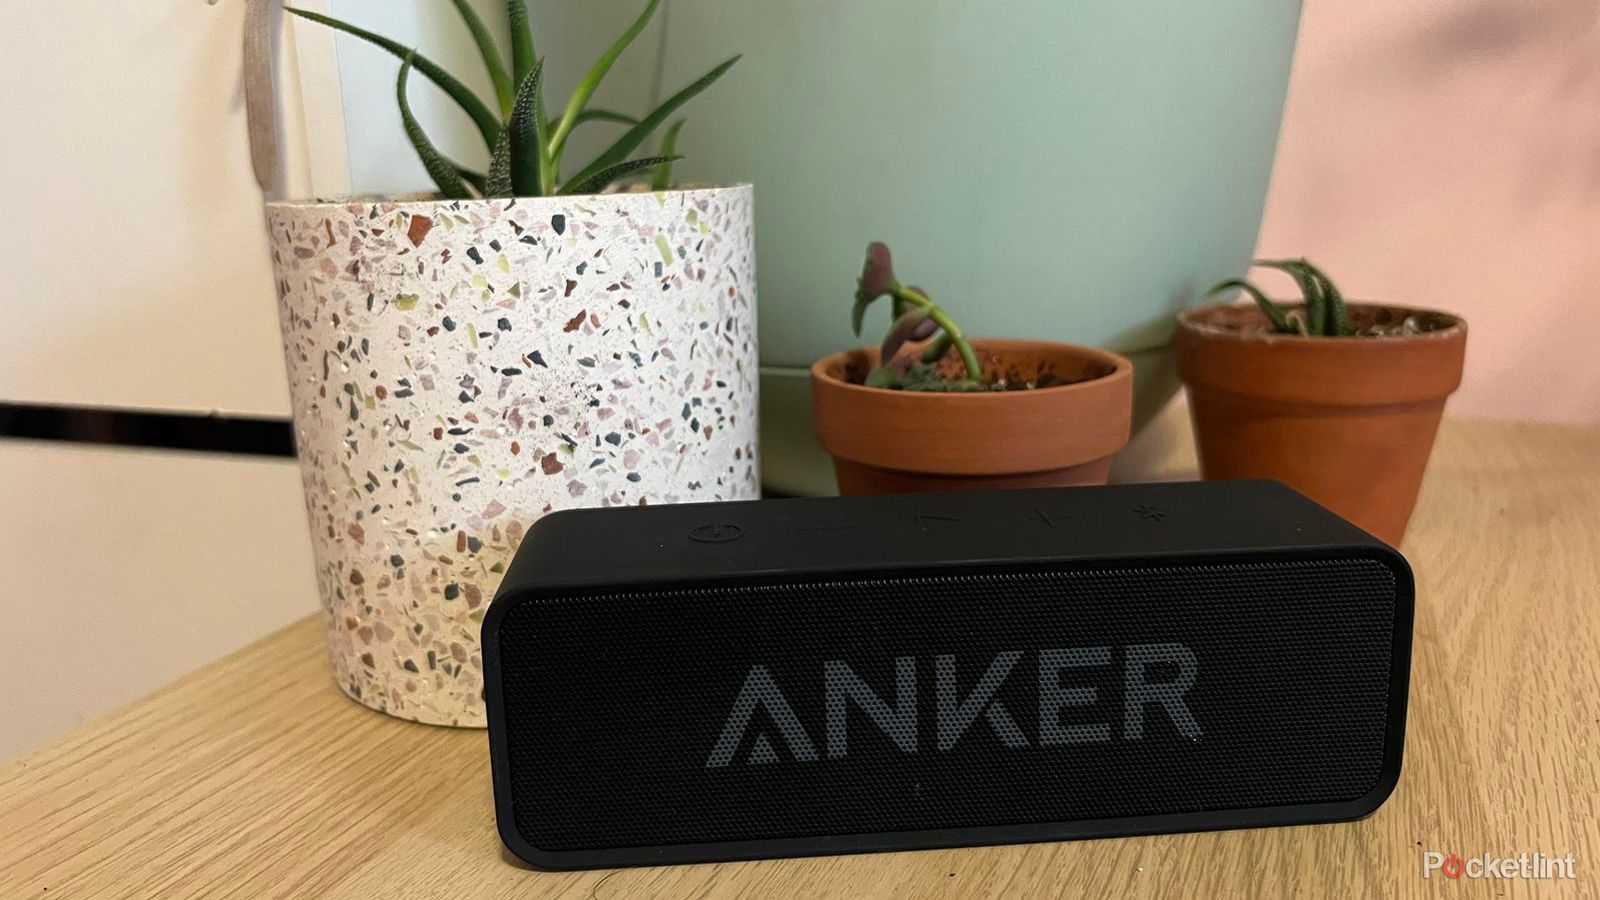 Anker Soundcore bluetooth speaker on table